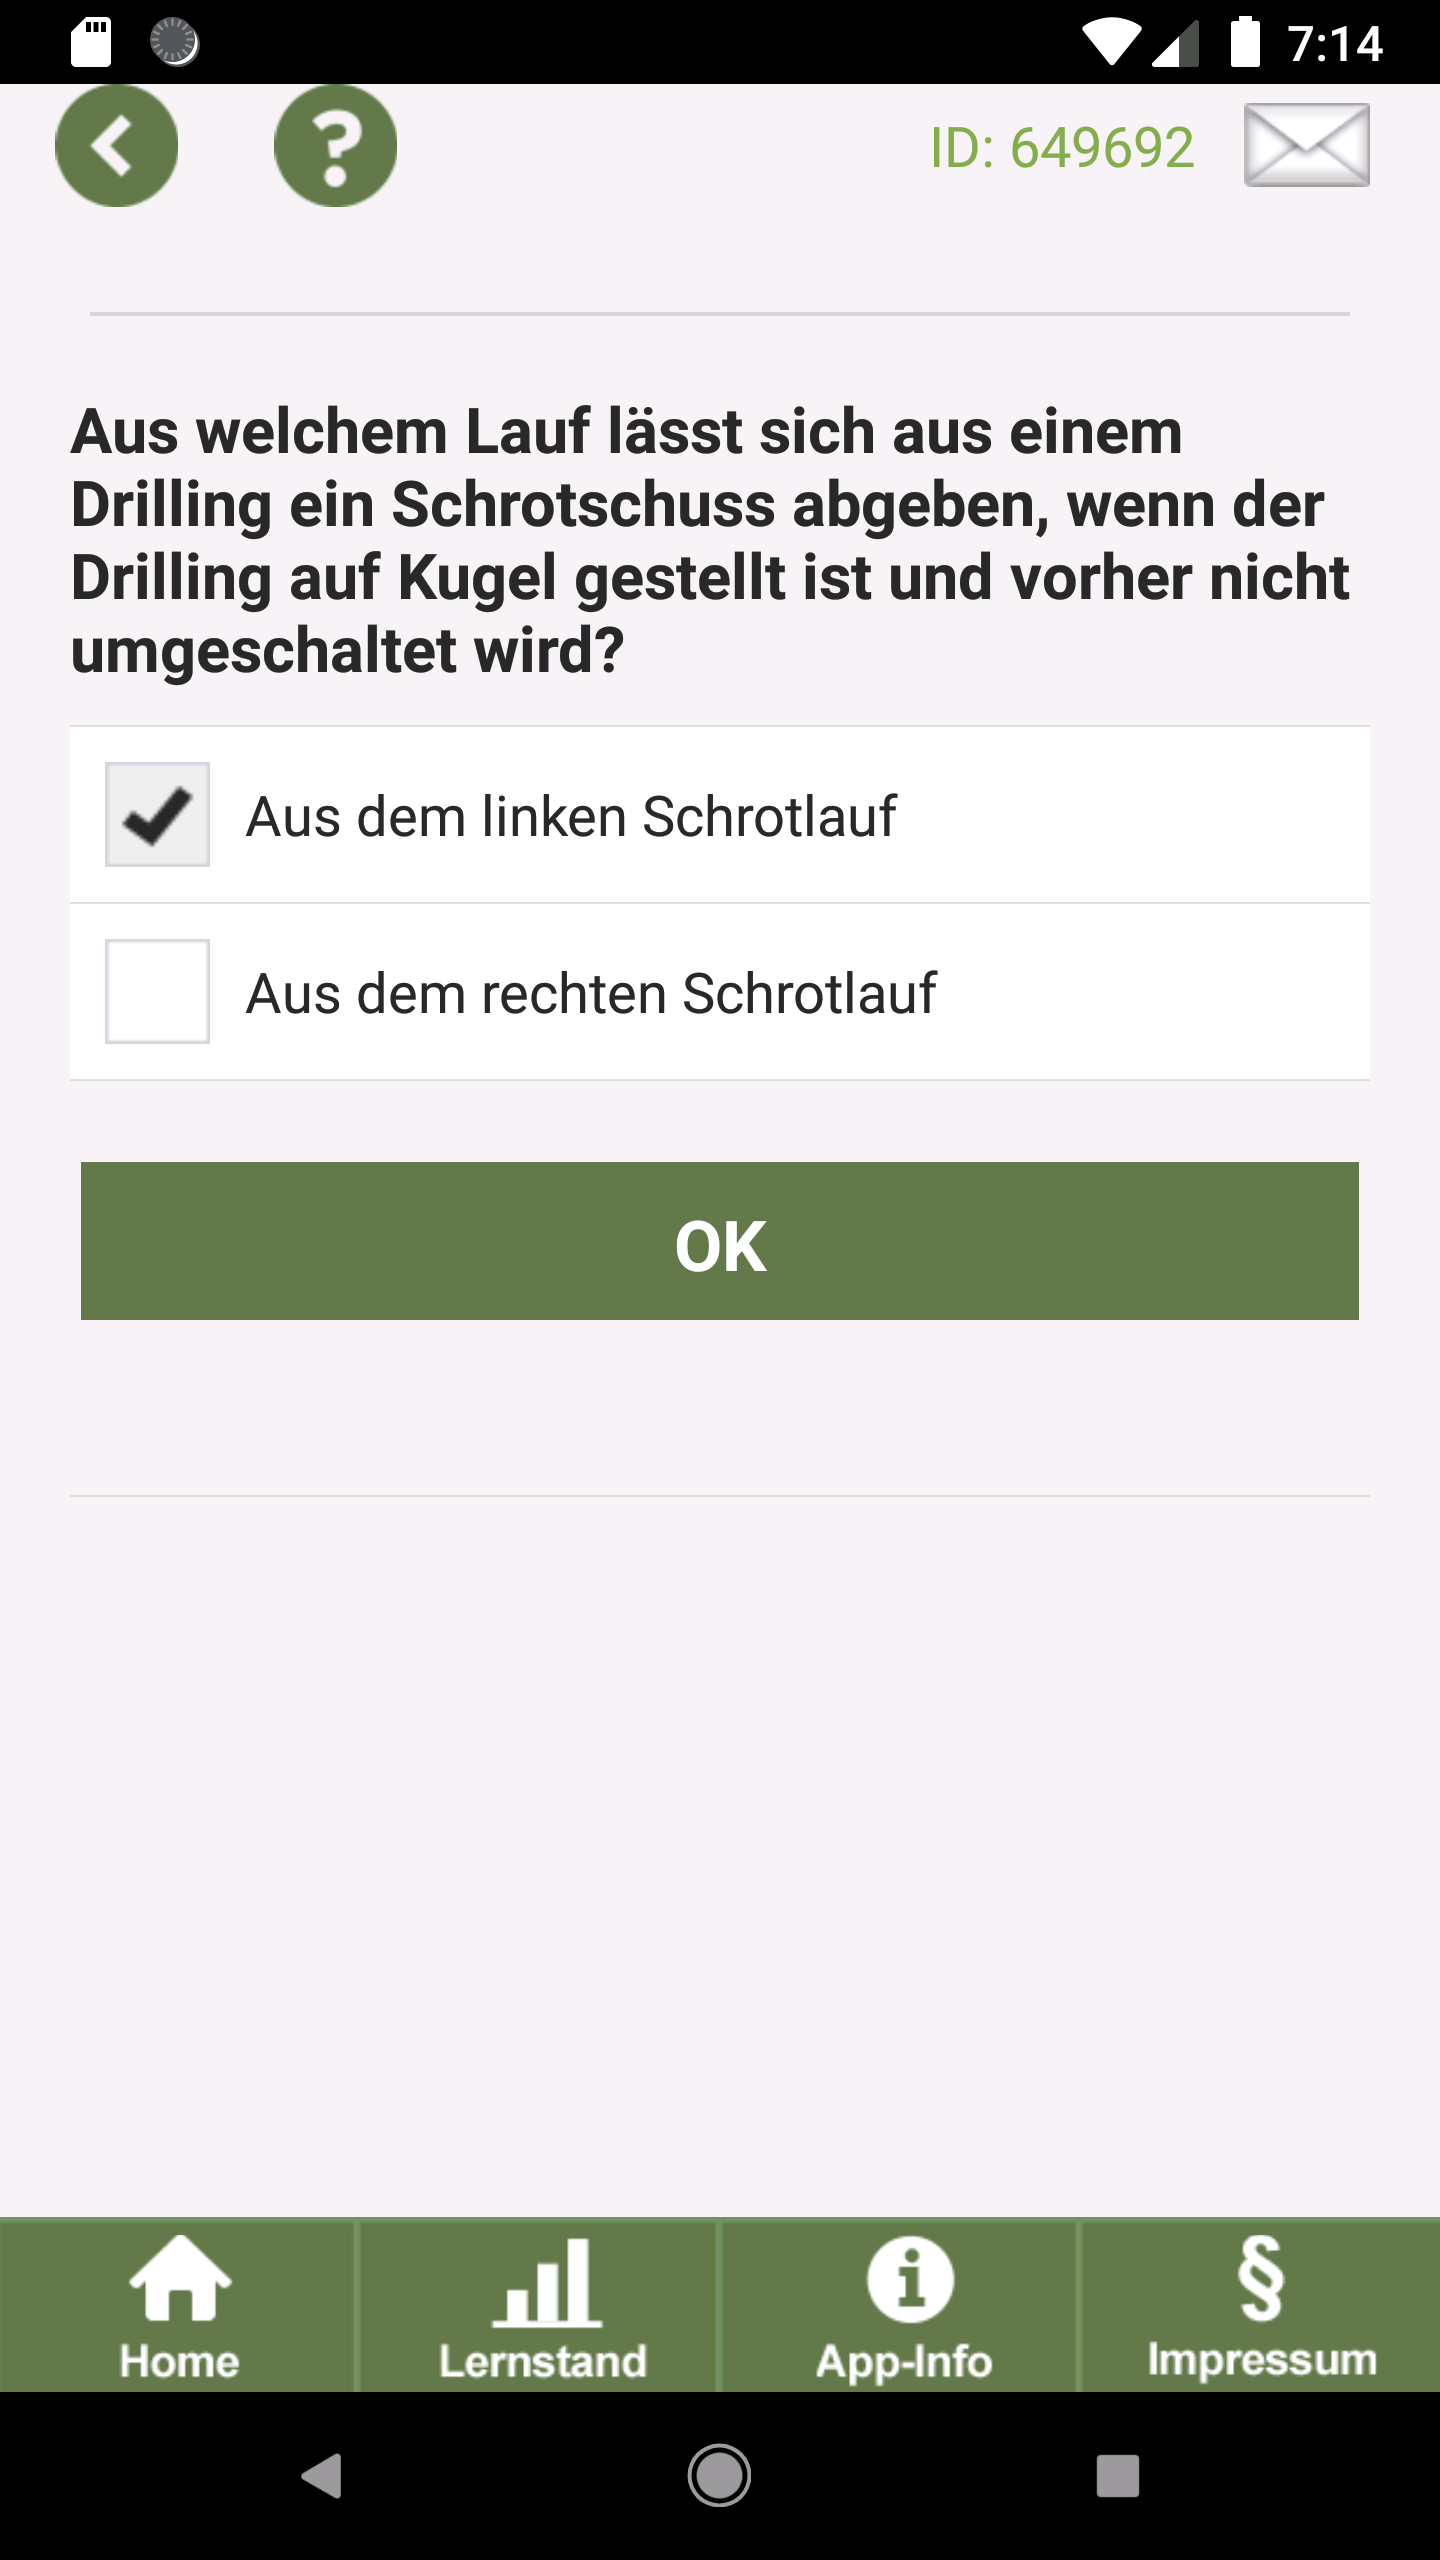 Android application Jagdprüfung - Bayern screenshort